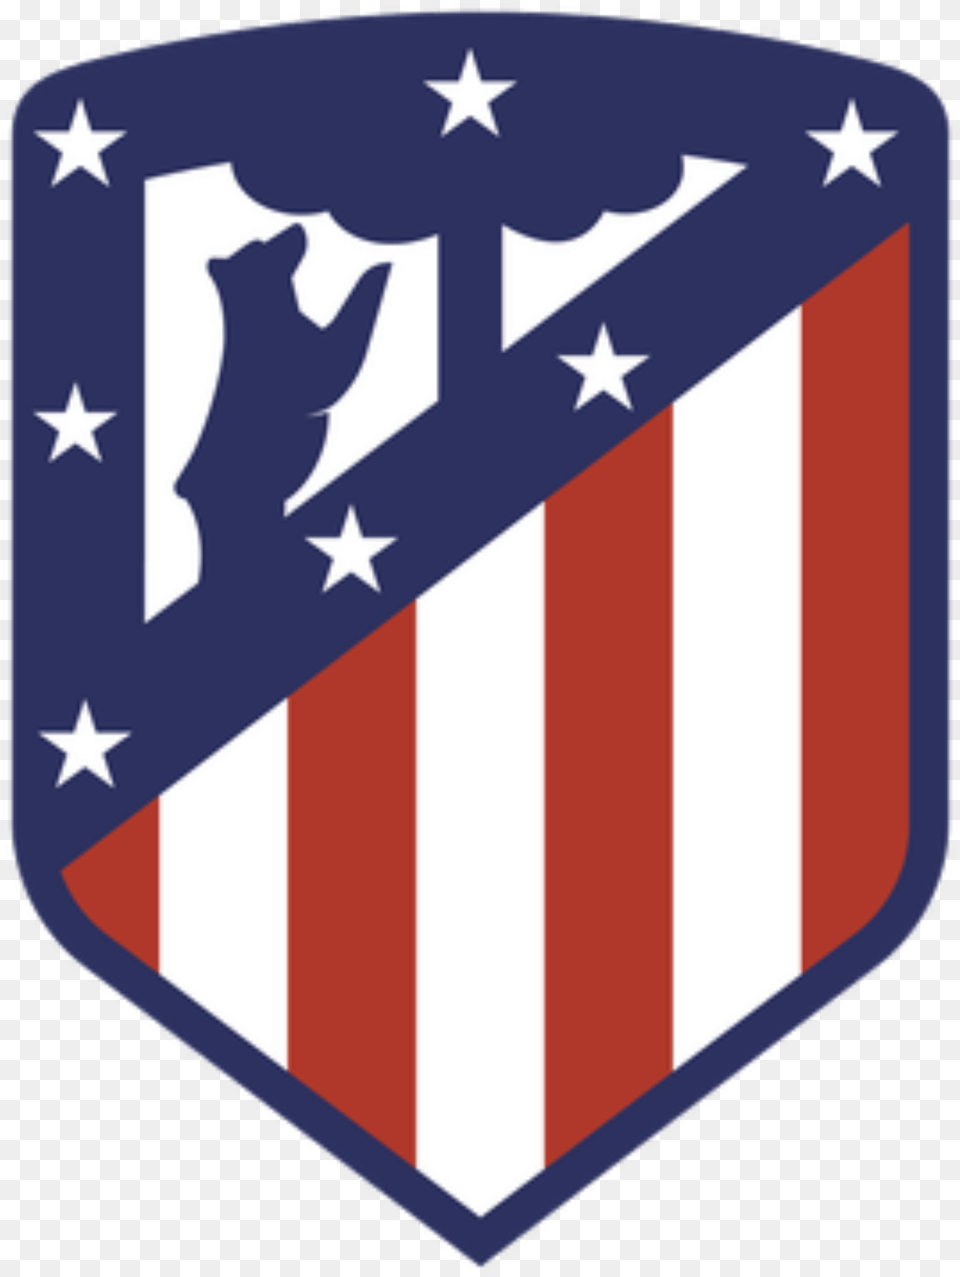 Madrid Predictions Picks Atletico Madrid Logo, Flag, Armor, Shield Png